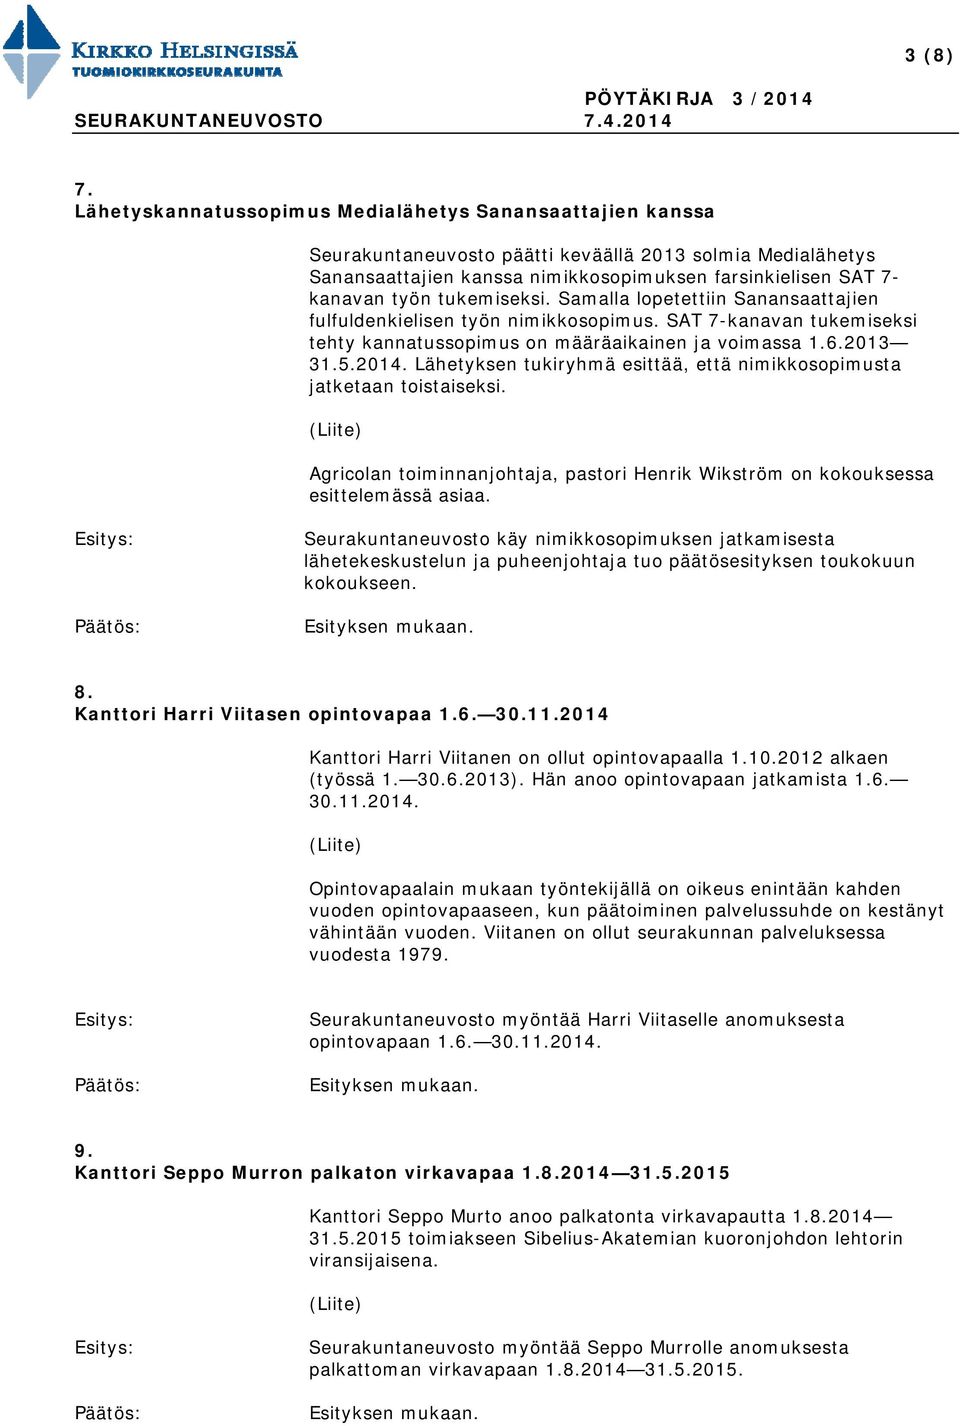 tukemiseksi. Samalla lopetettiin Sanansaattajien fulfuldenkielisen työn nimikkosopimus. SAT 7-kanavan tukemiseksi tehty kannatussopimus on määräaikainen ja voimassa 1.6.2013 31.5.2014.